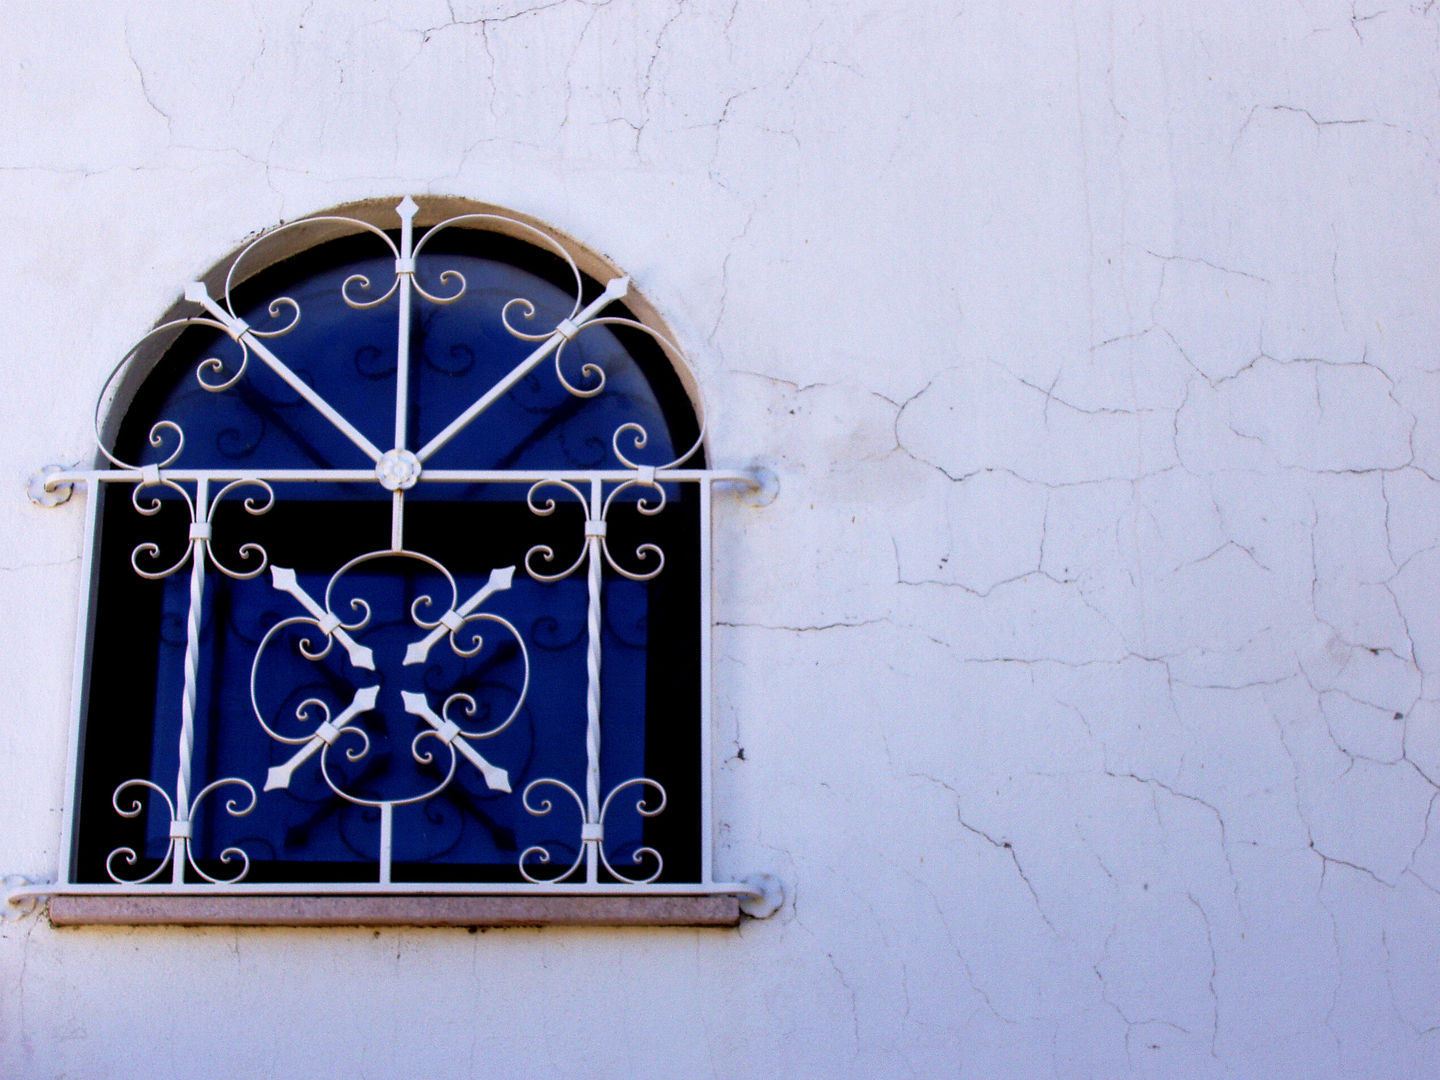 Renovación de Fachadas / Reparación de Grietas, Fisuras RenoBuild Algarve Casas de estilo mediterráneo